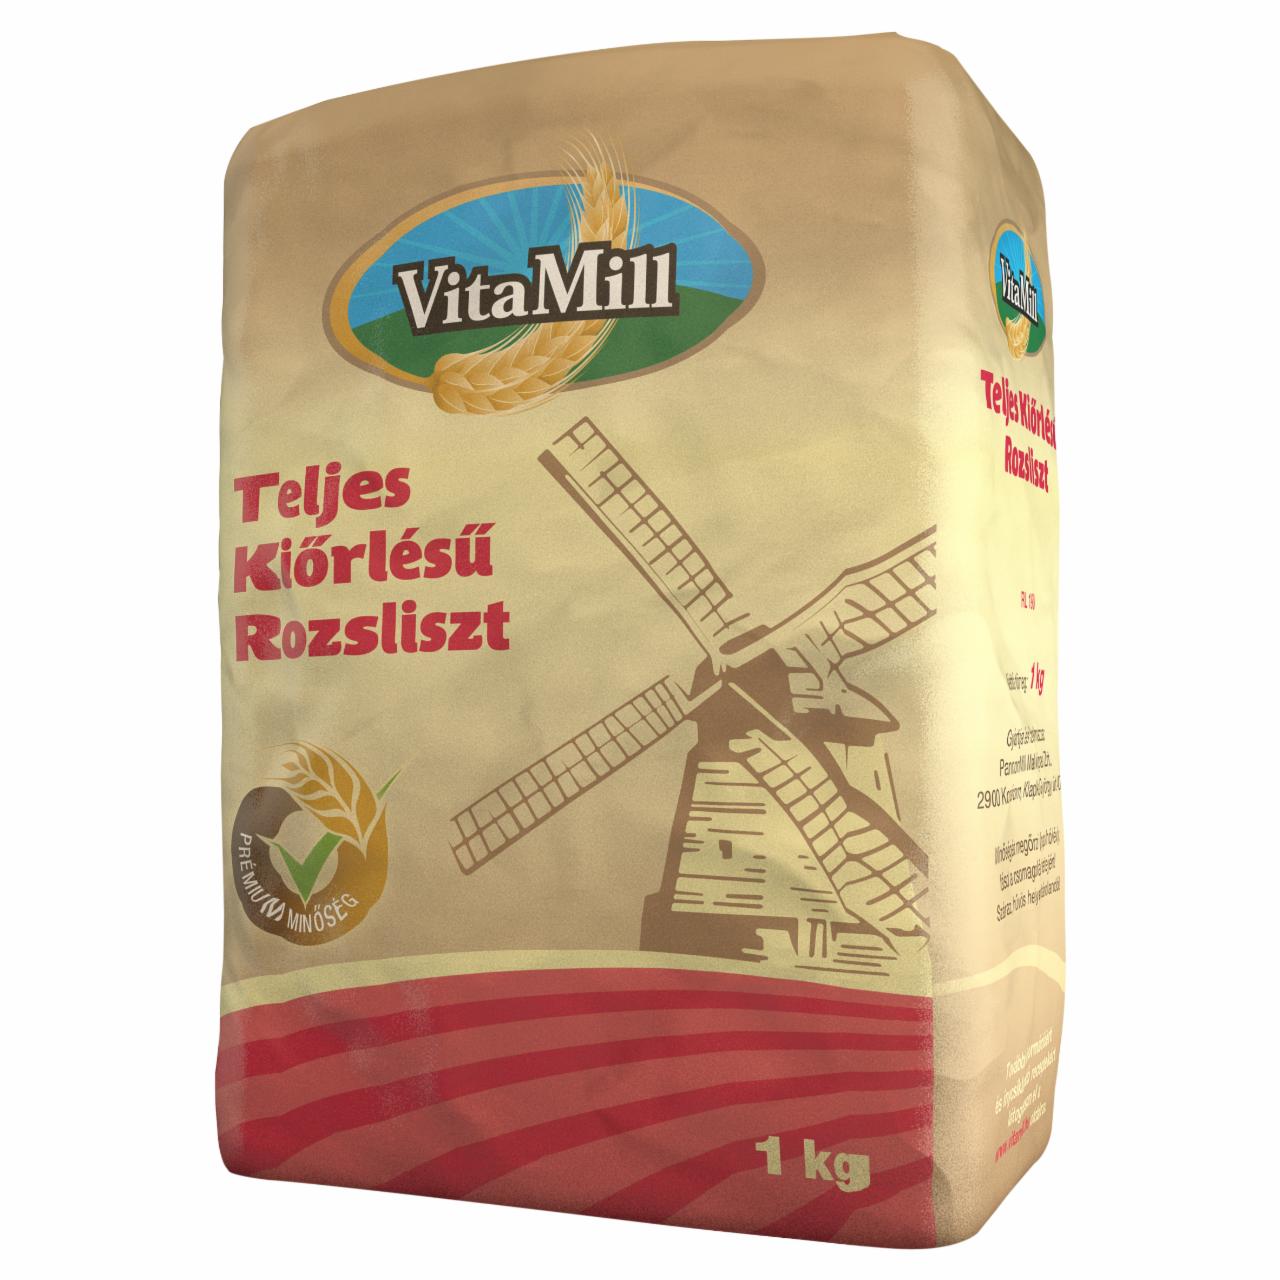 Képek - VitaMill teljes kiőrlésű rozsliszt 1 kg